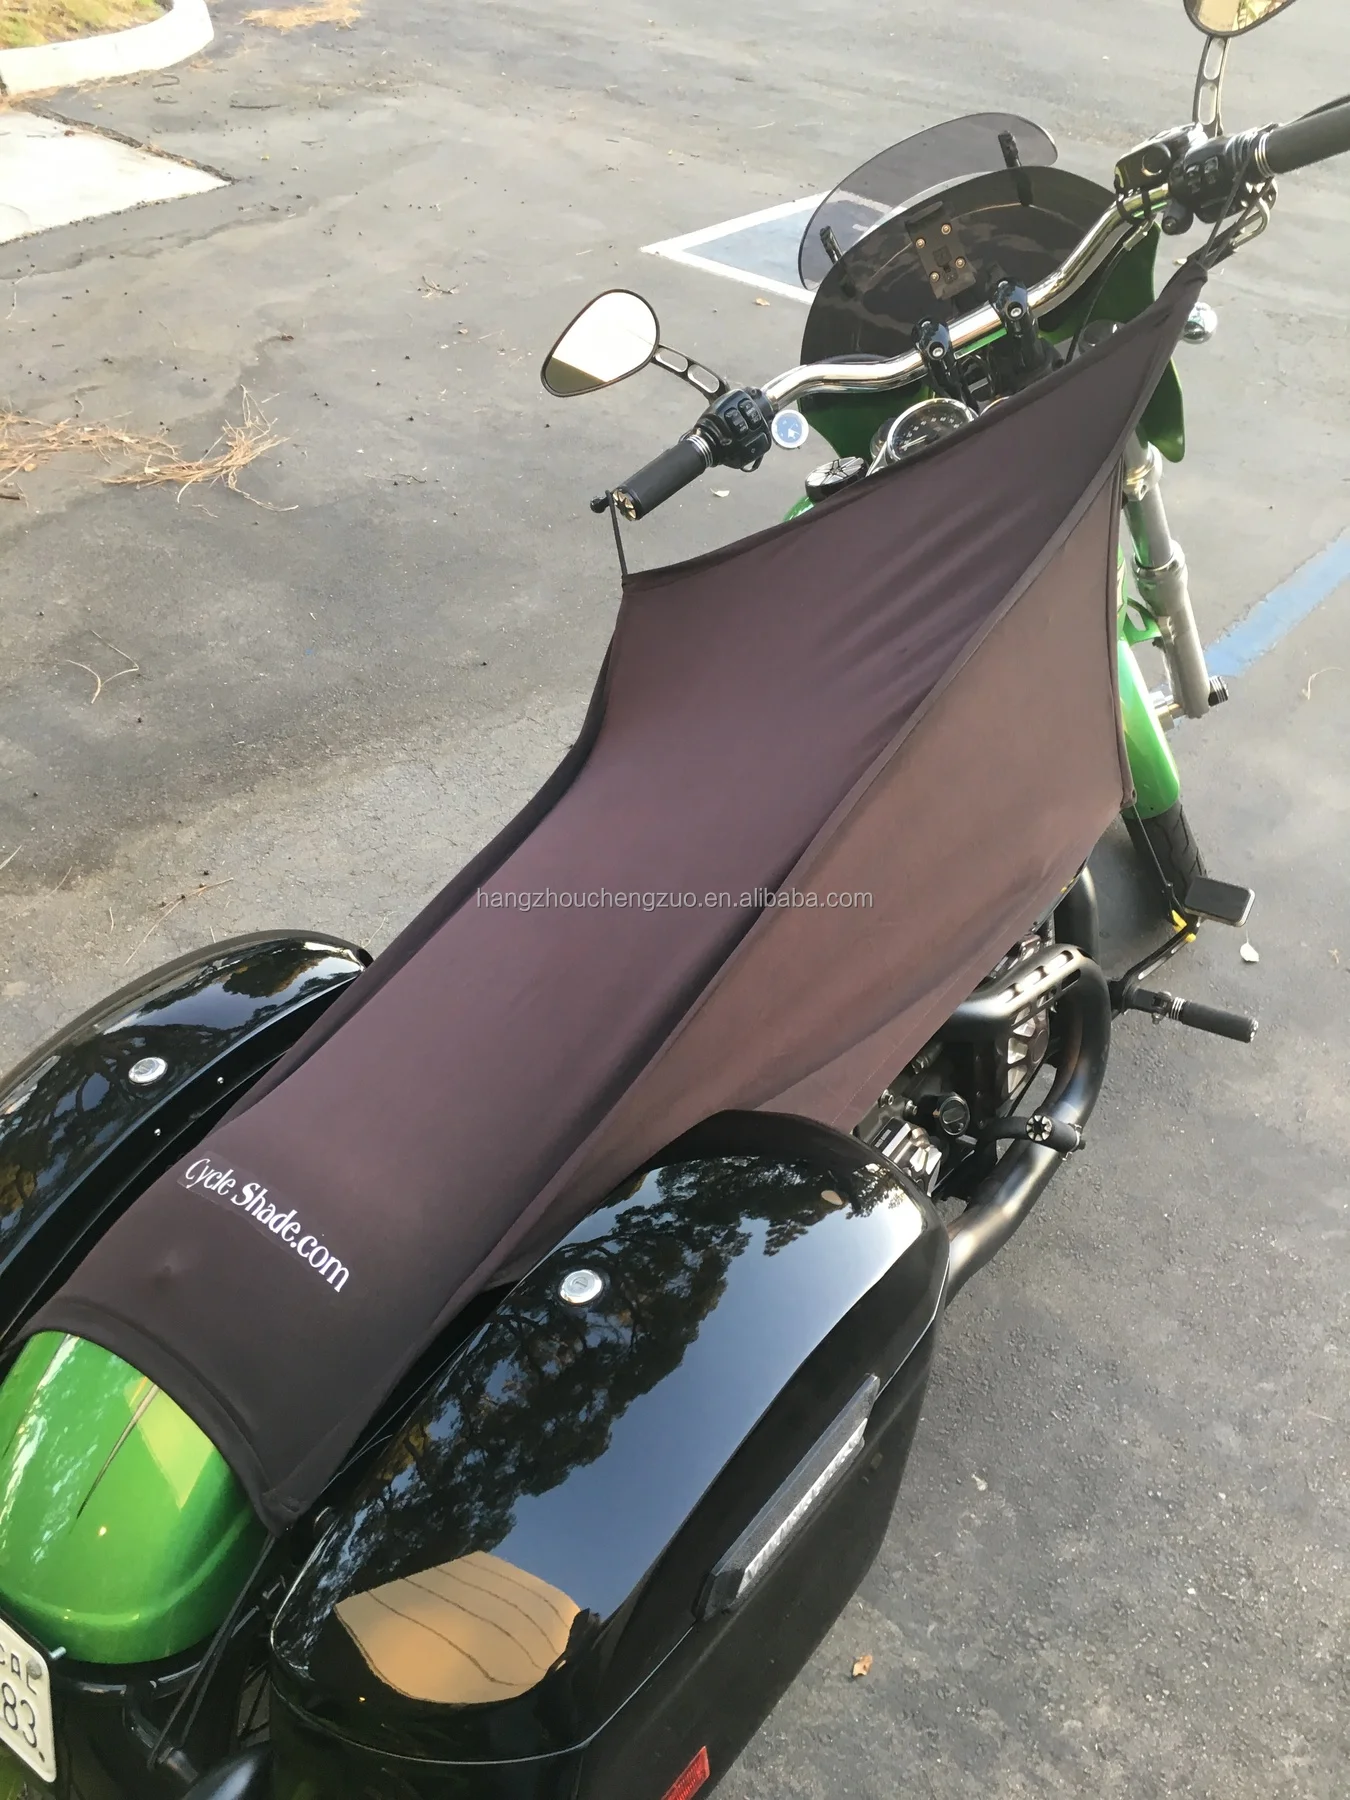 Hot Selling CZX-429 waterproof Motorcycle Half Cover shade,Motorcycle cover shade